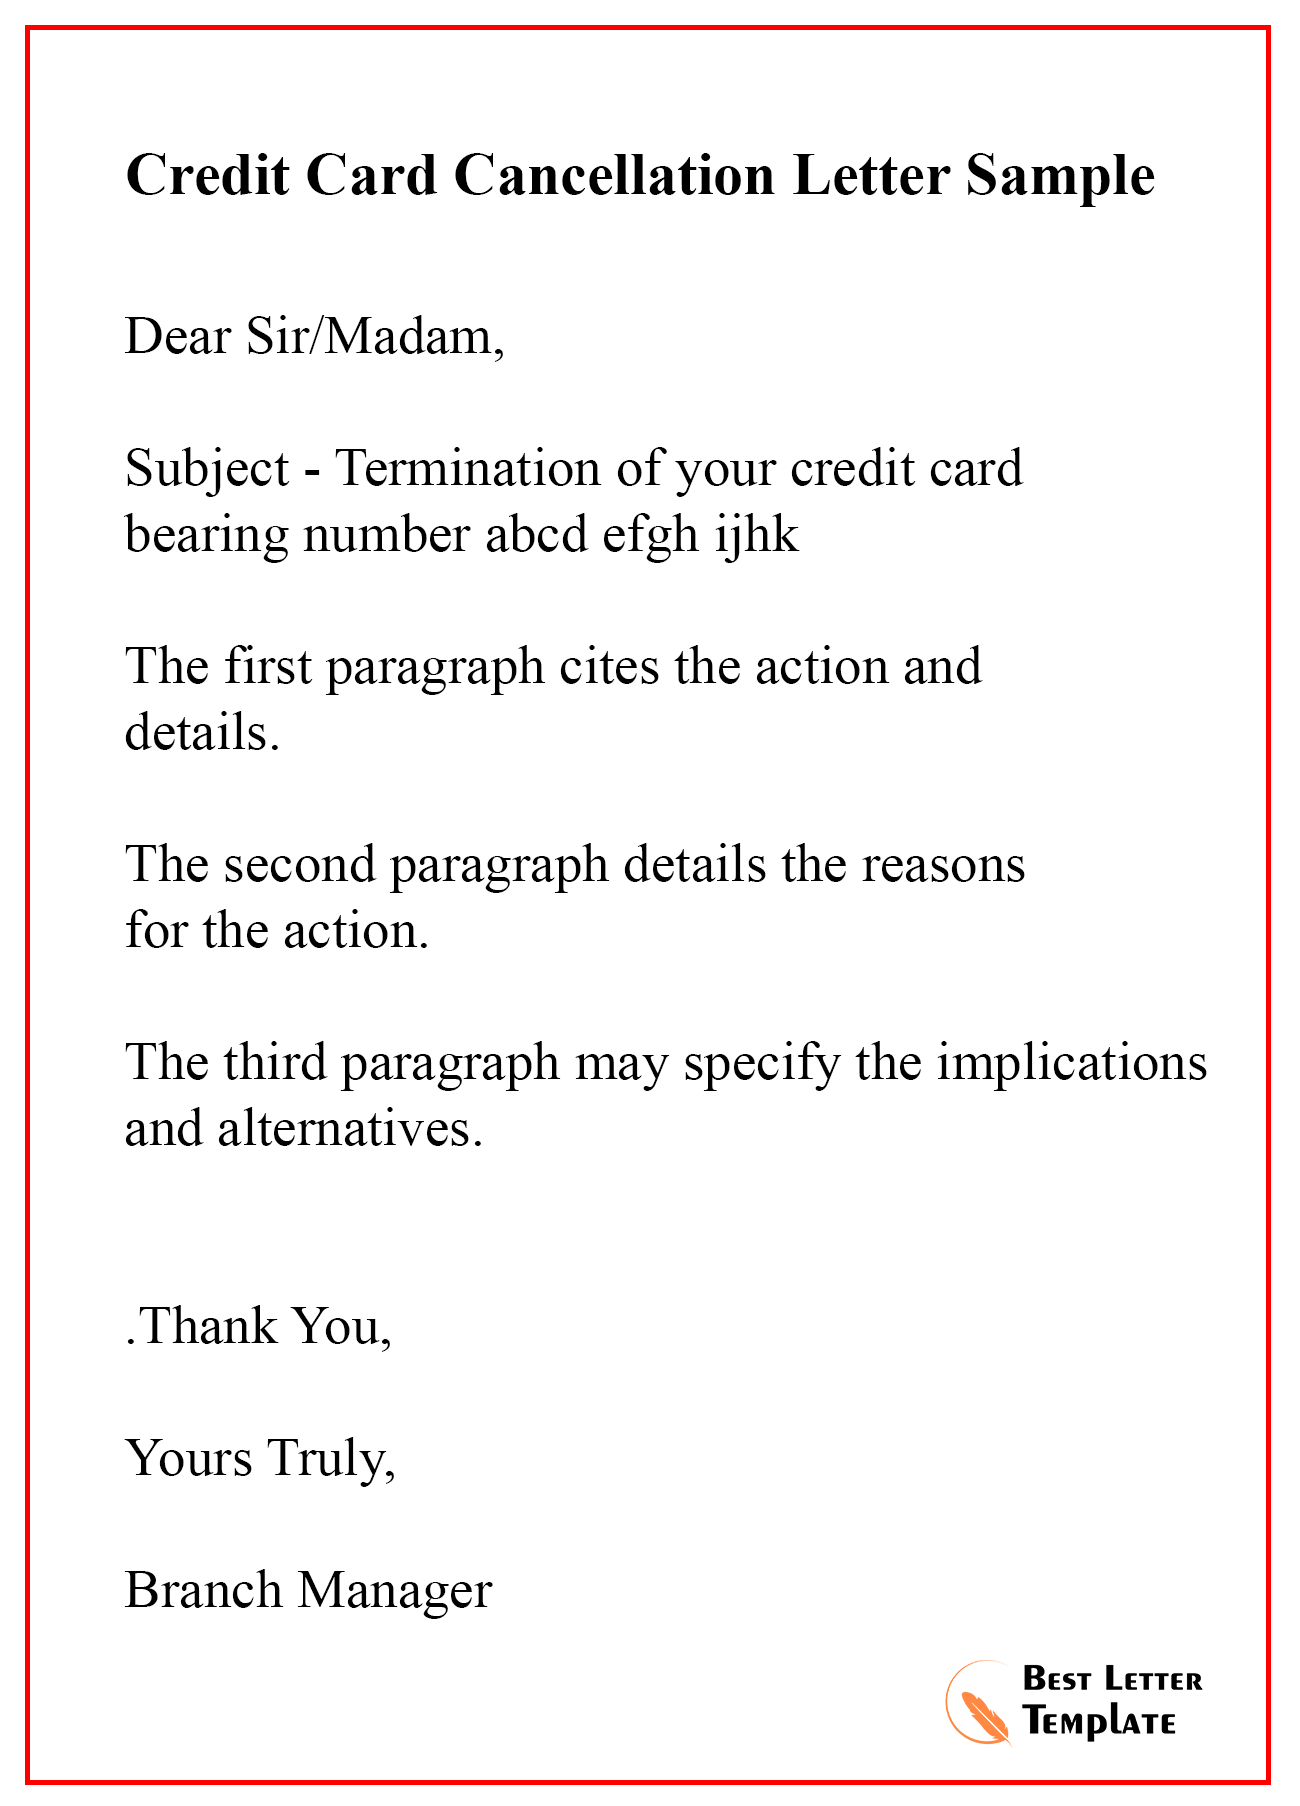 Contoh Surat Increase Credit Card